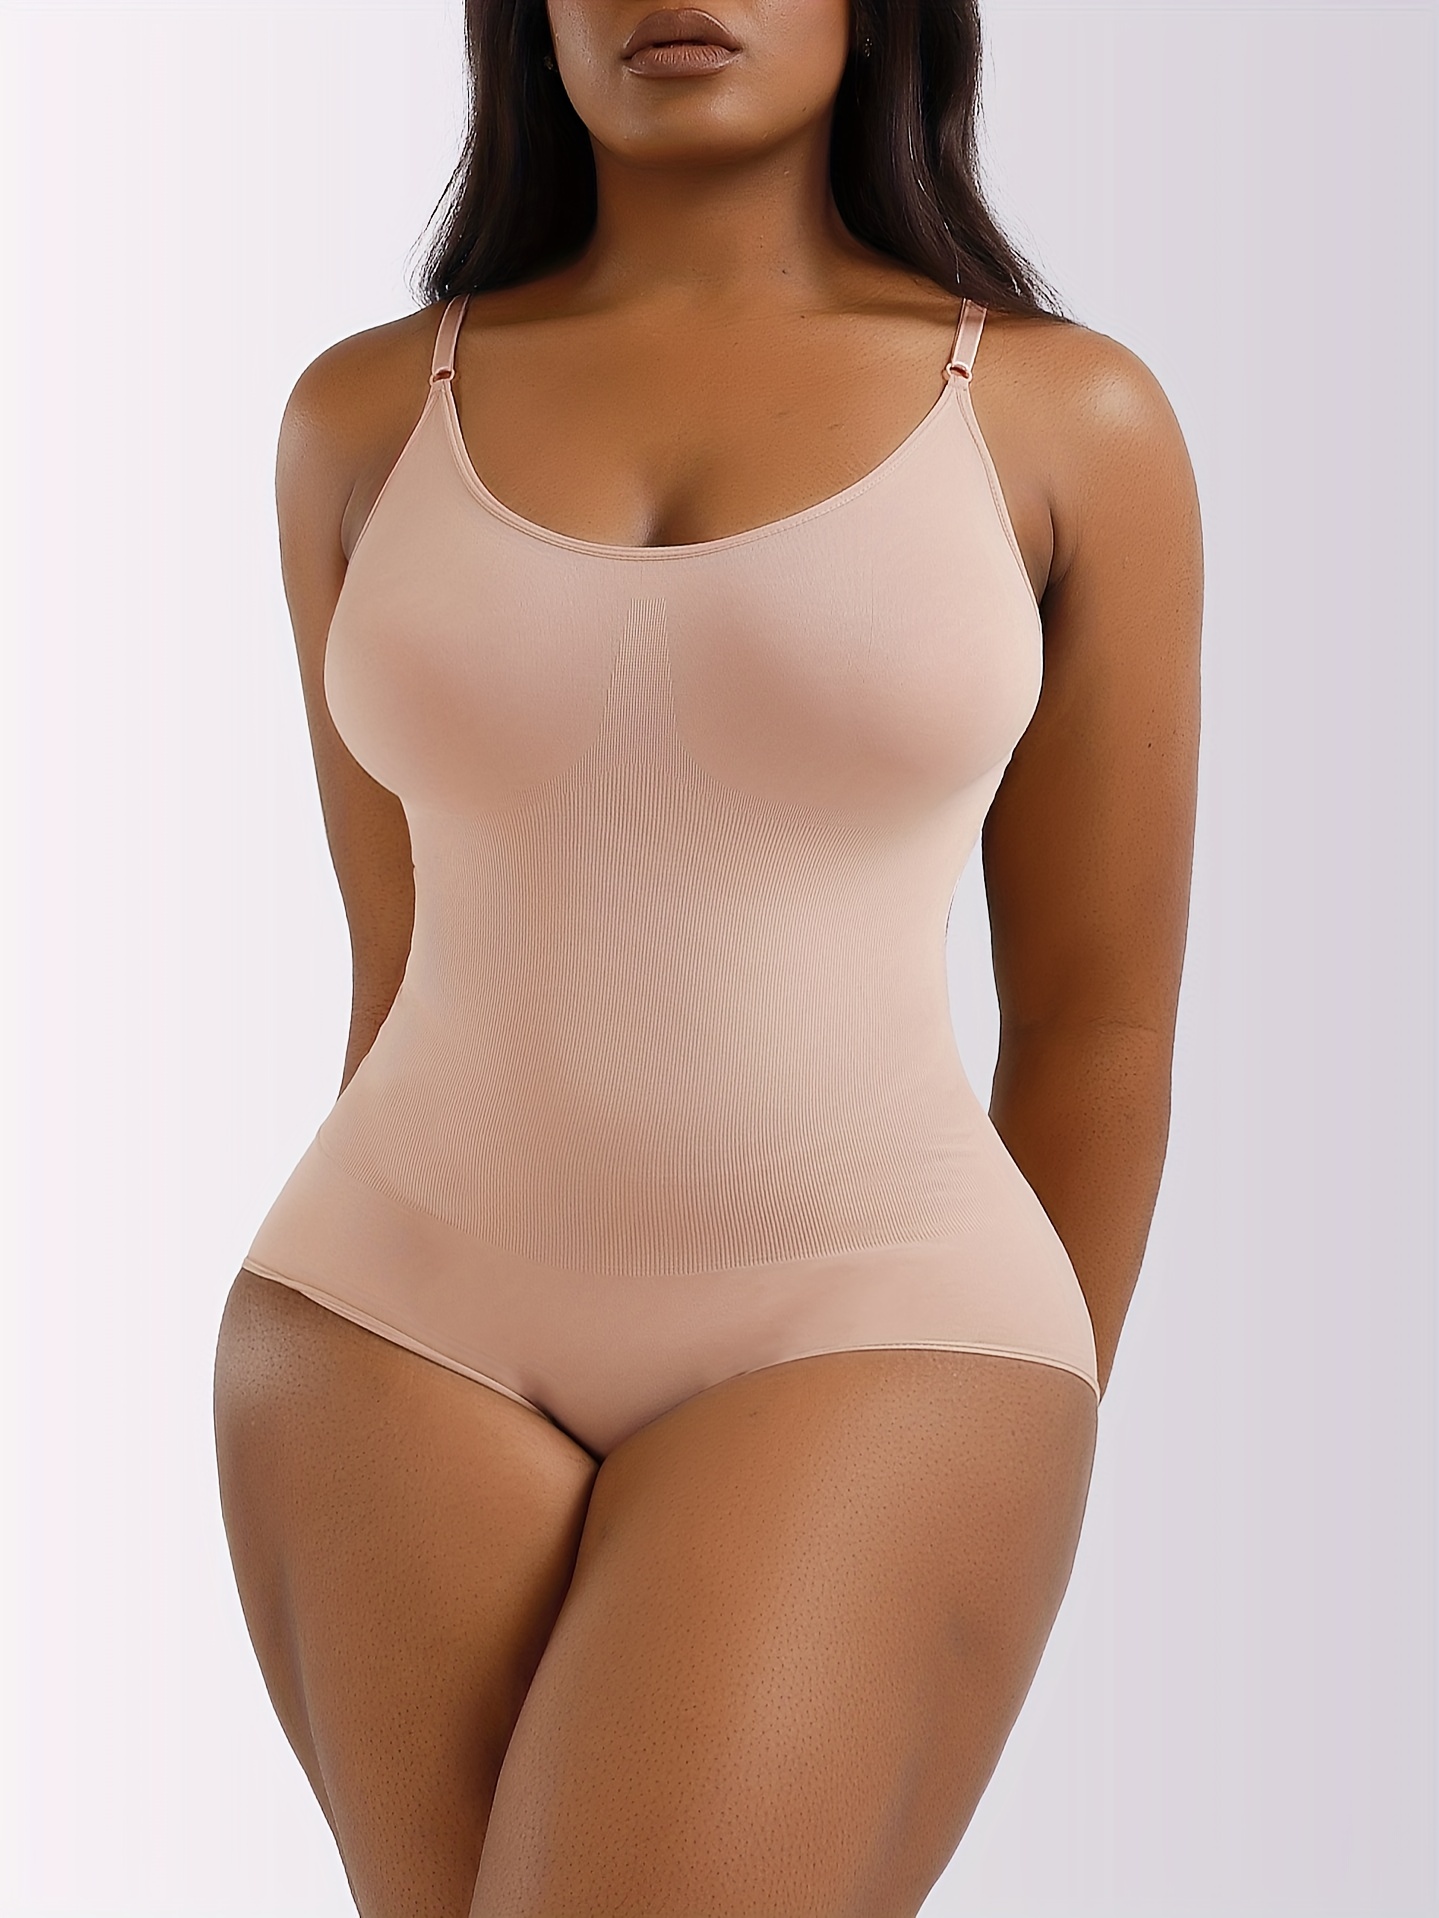 Yinmgmhj shaperx bodysuit Shaping Pants Hip Waist Regain Women's High  Slimming Body Underwear Shapeware Beige+L